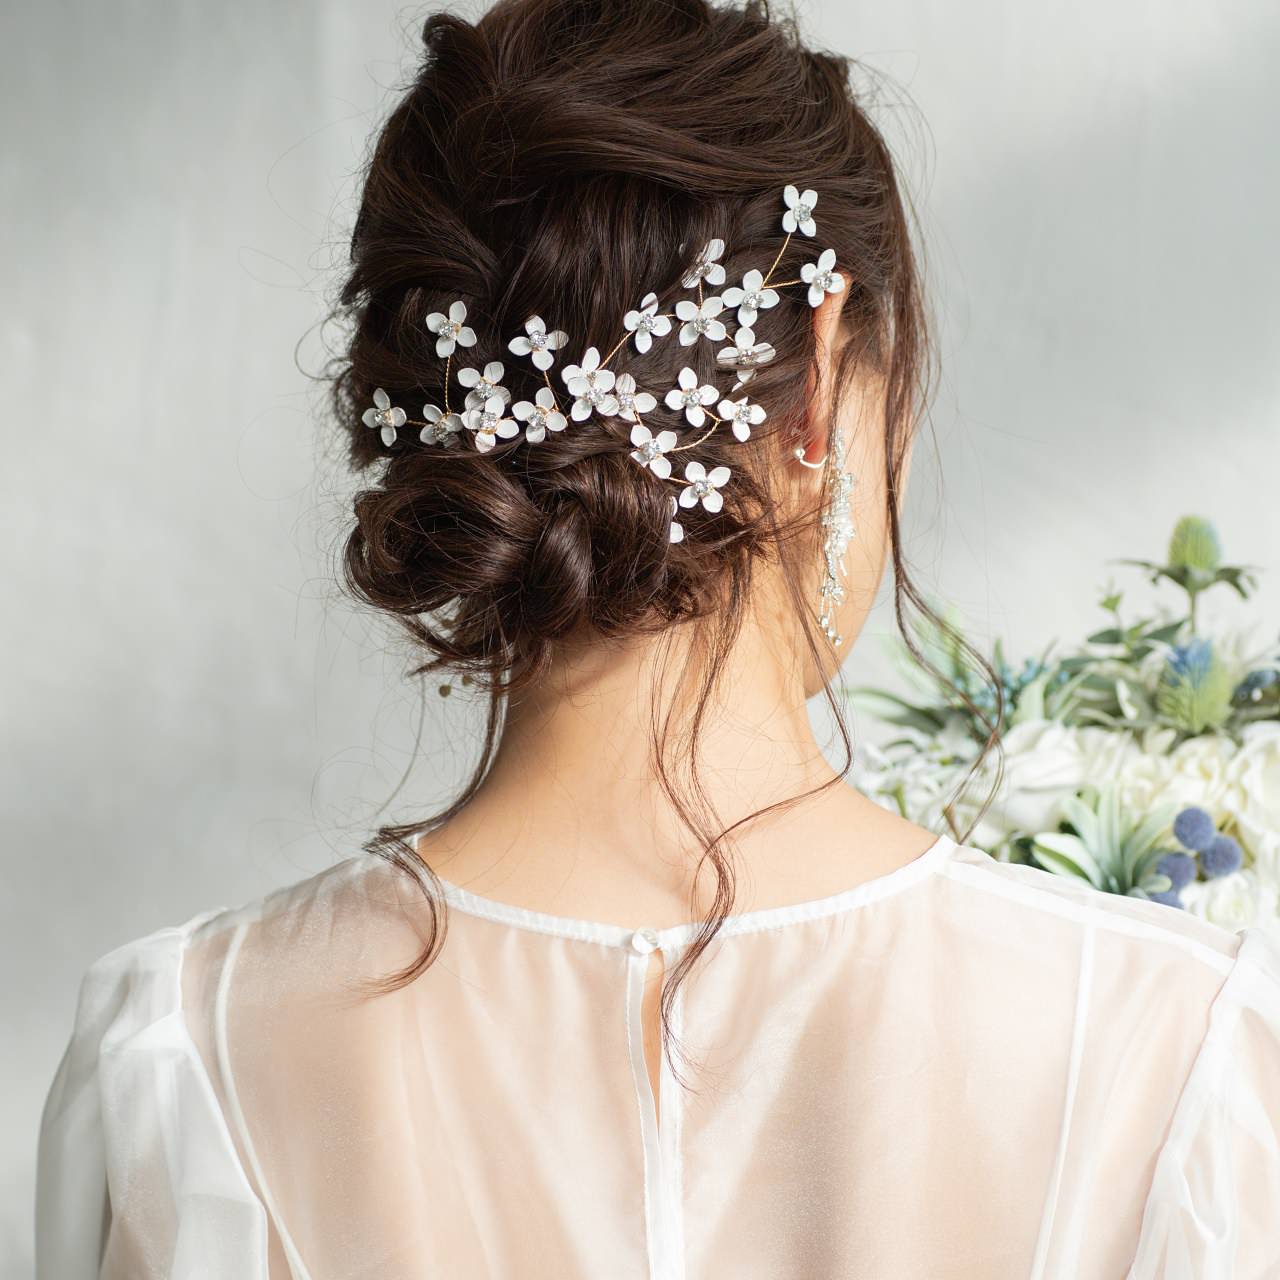 4点セット) ブライダルヘッドドレス 白い小花 ピンゴールド p16 【結婚